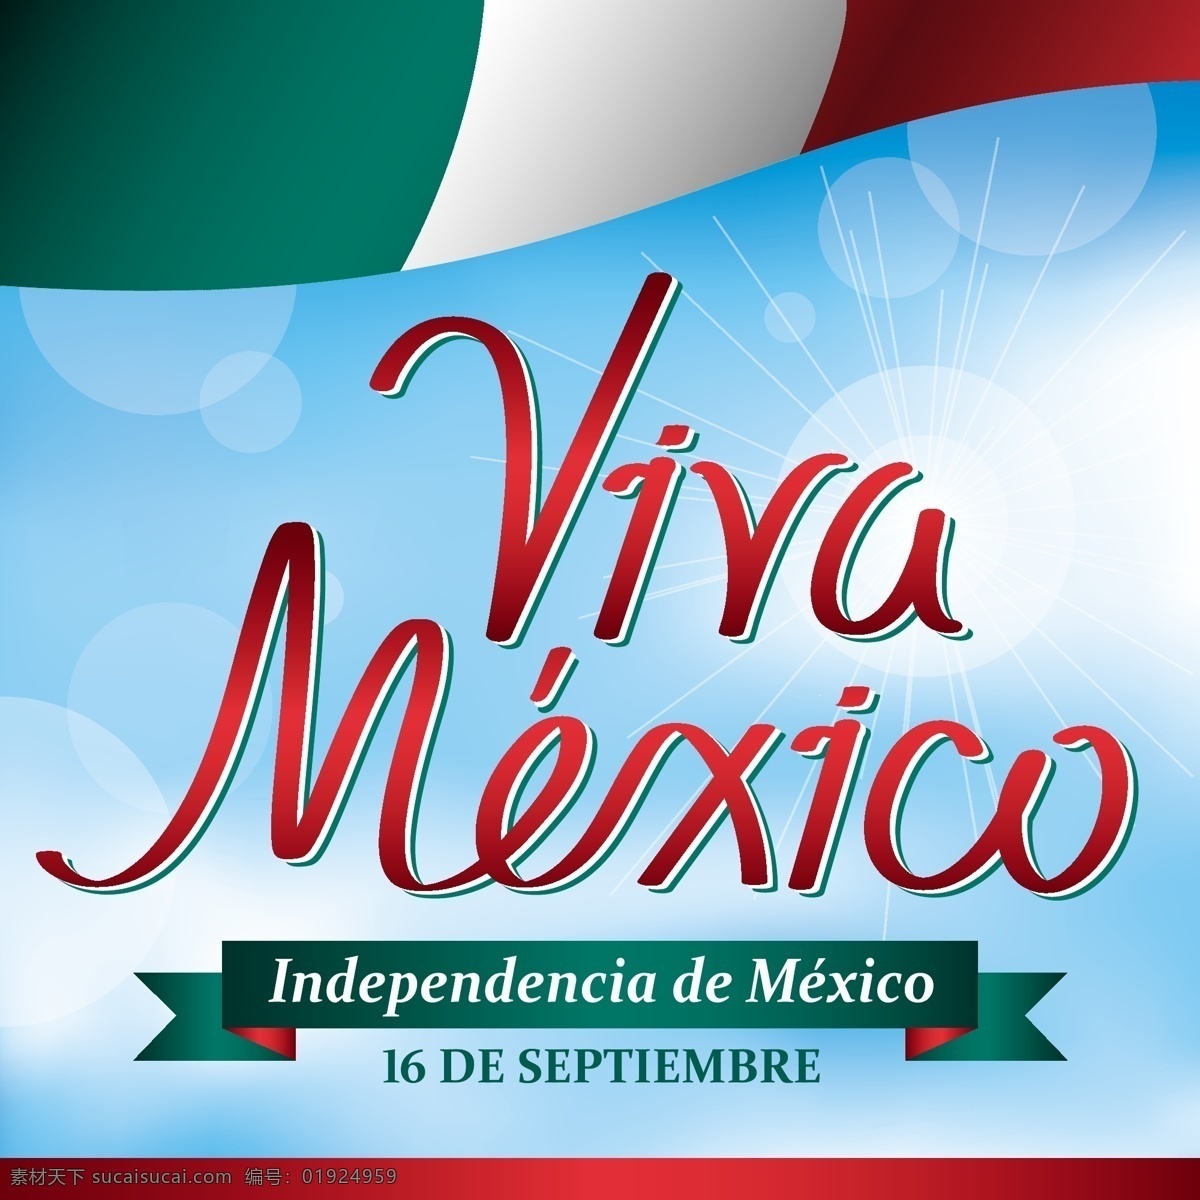 墨西哥 海报 背景 蓝天 阳光 墨西哥国旗 矢量图案 边框底纹 背景图 生活百科 矢量素材 青色 天蓝色